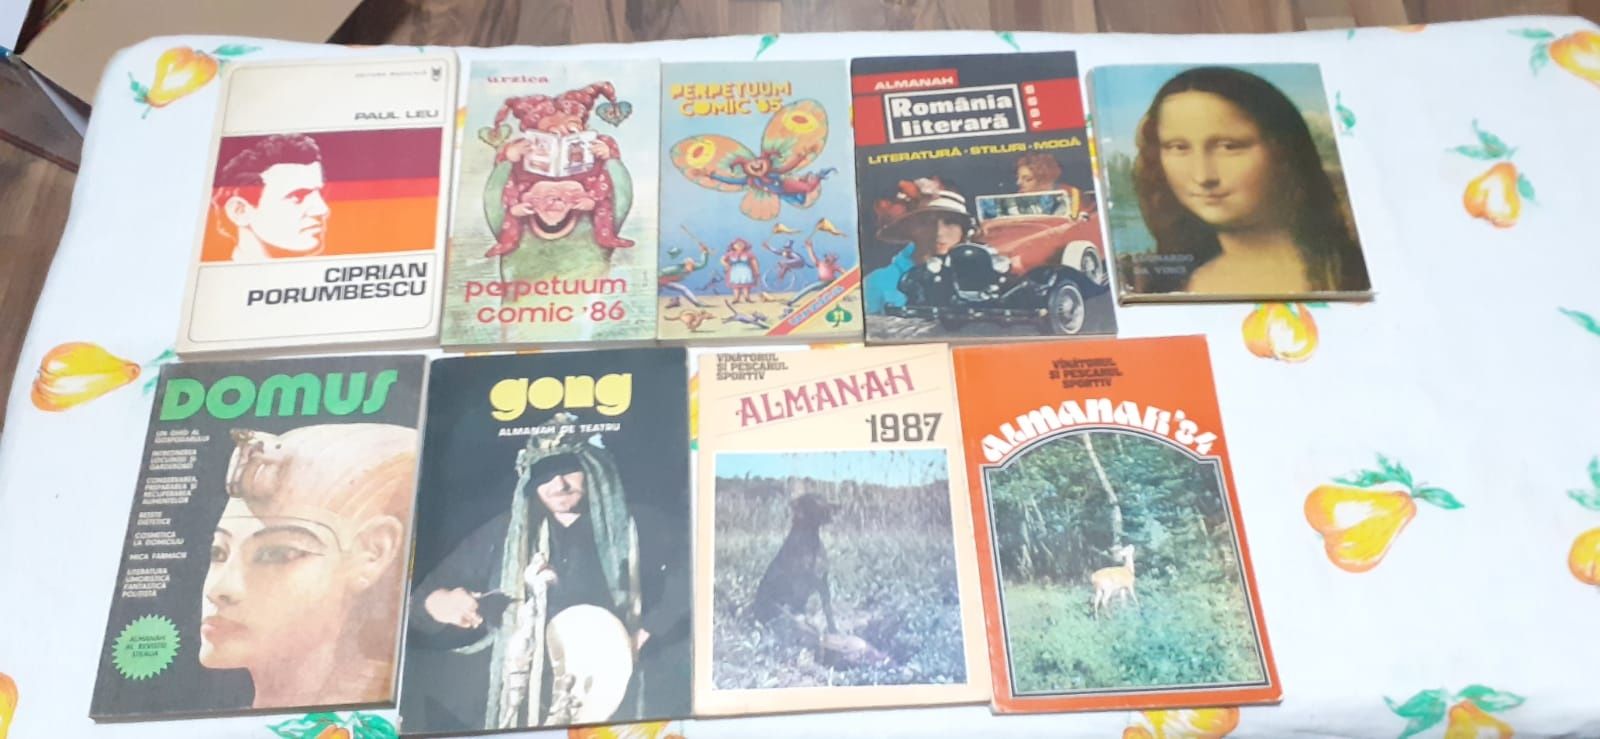 Almanah...reviste si carti vechi